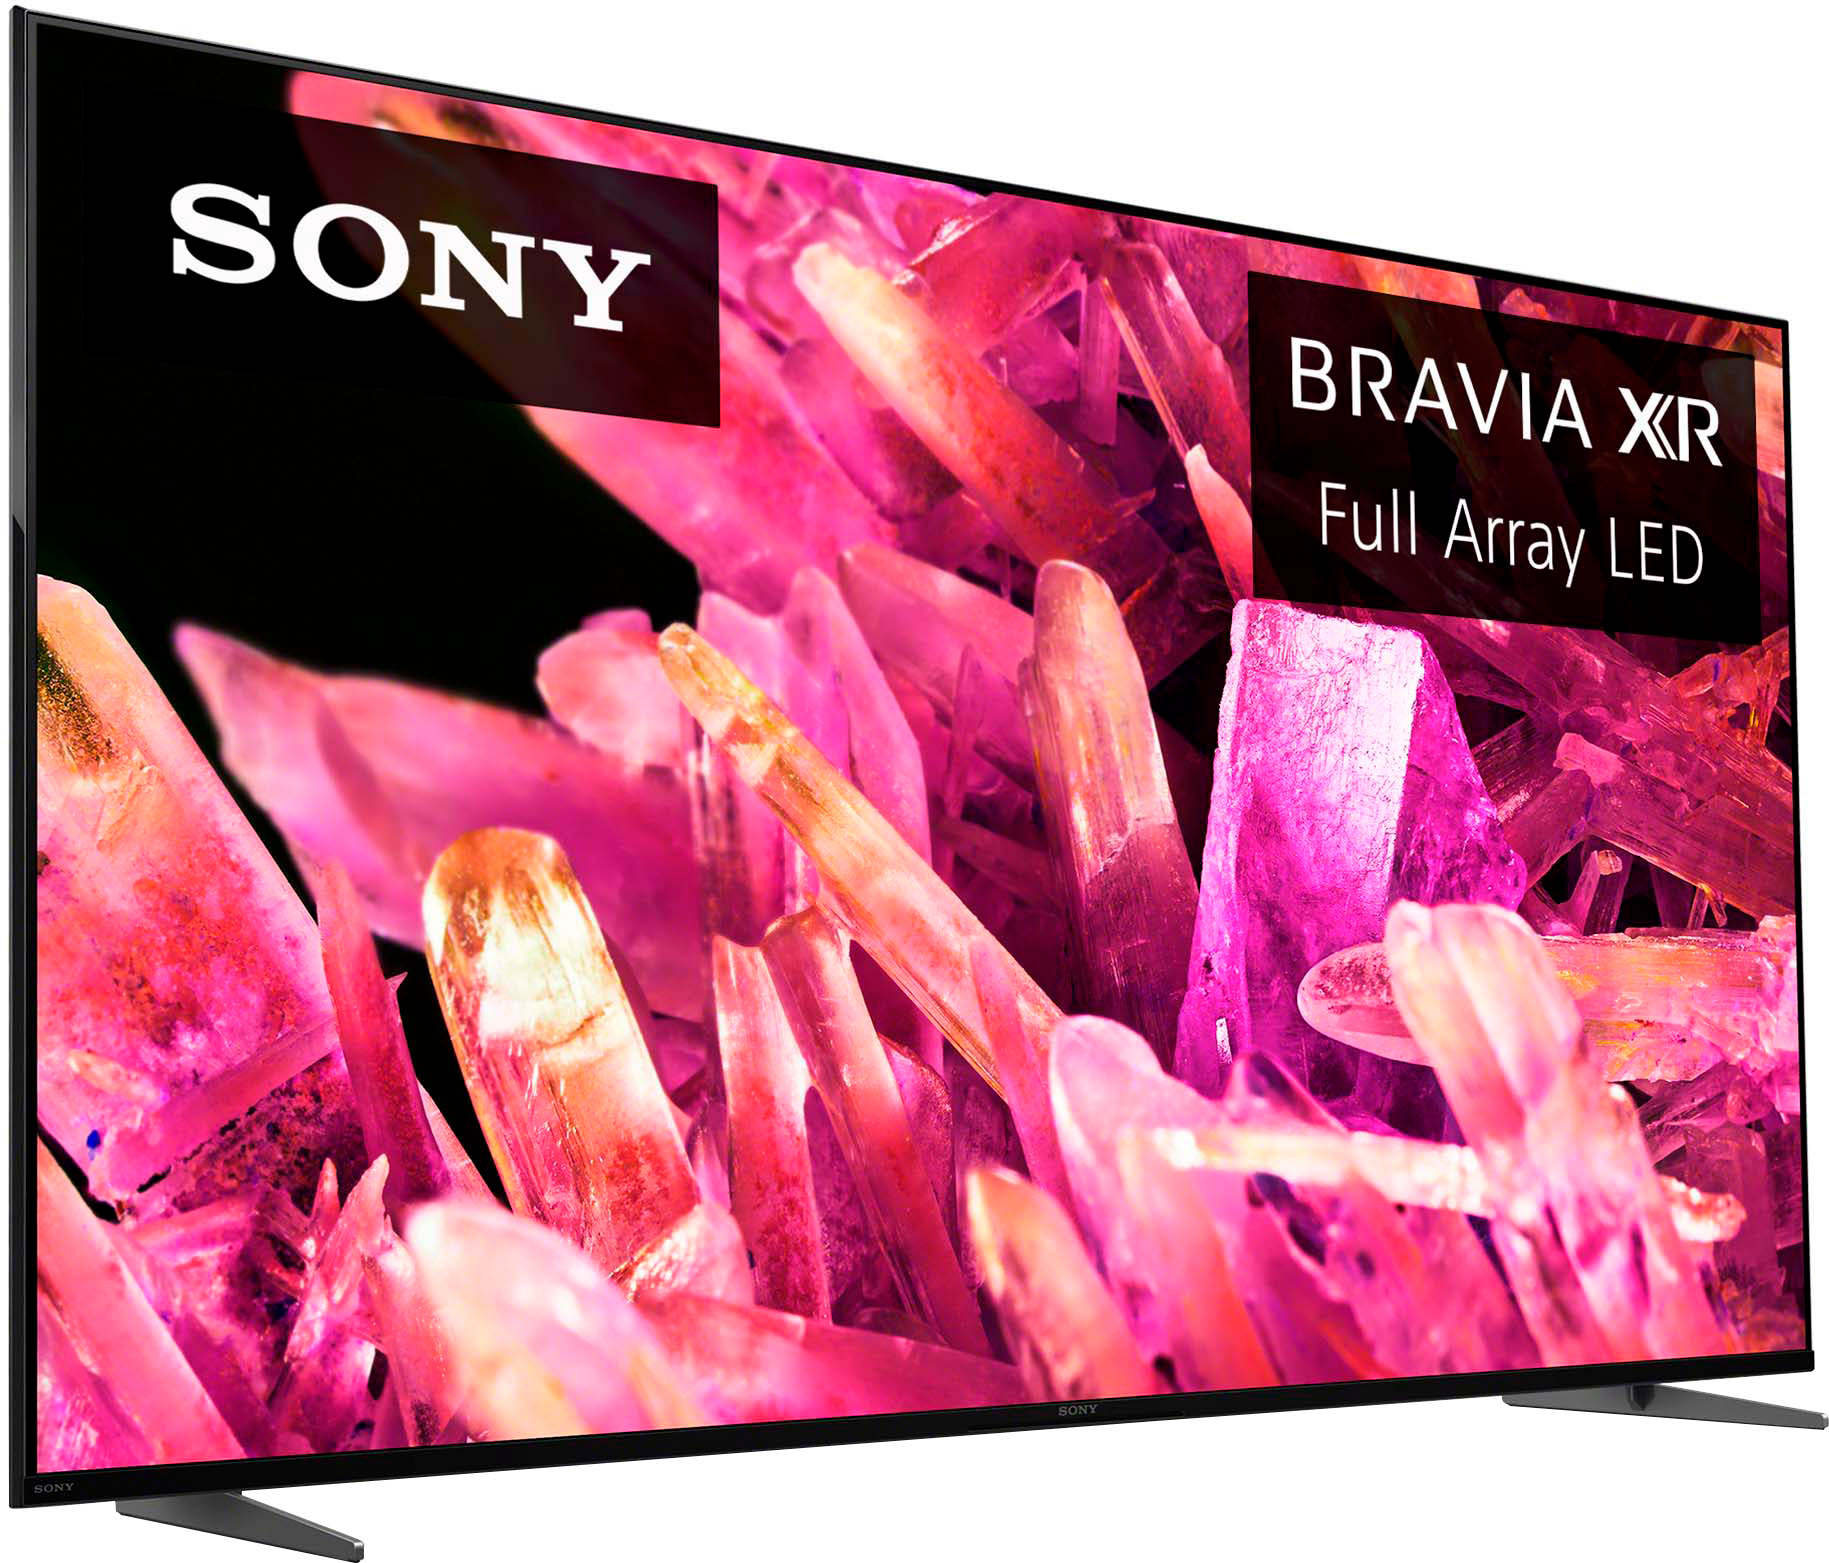 støvle prøve klinke Sony 75" Class BRAVIA XR X90K 4K HDR Full Array LED Google TV XR75X90K -  Best Buy